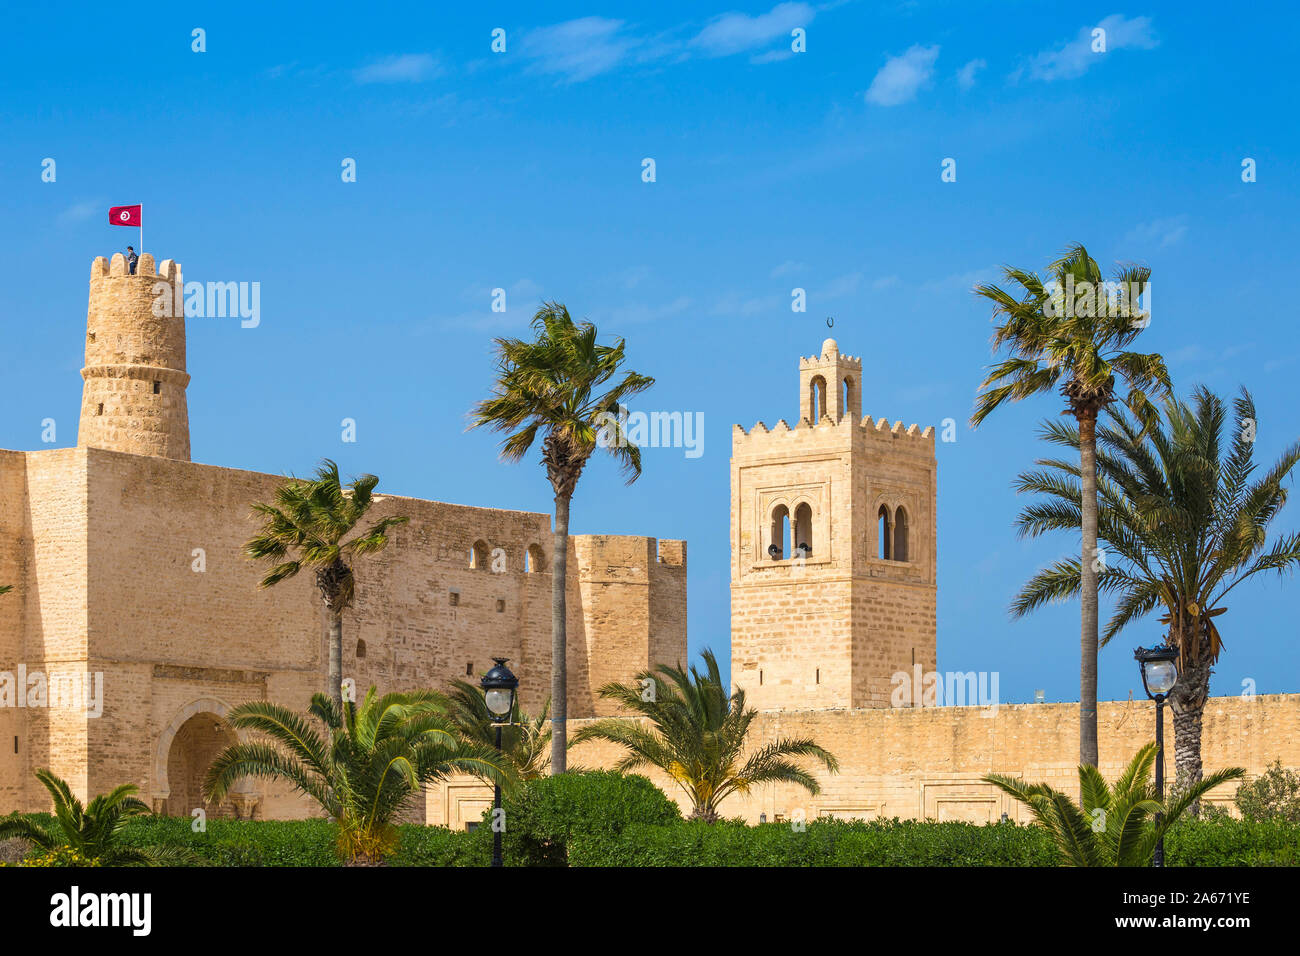 La Tunisia, Monastir, Fort e la grande moschea Foto Stock